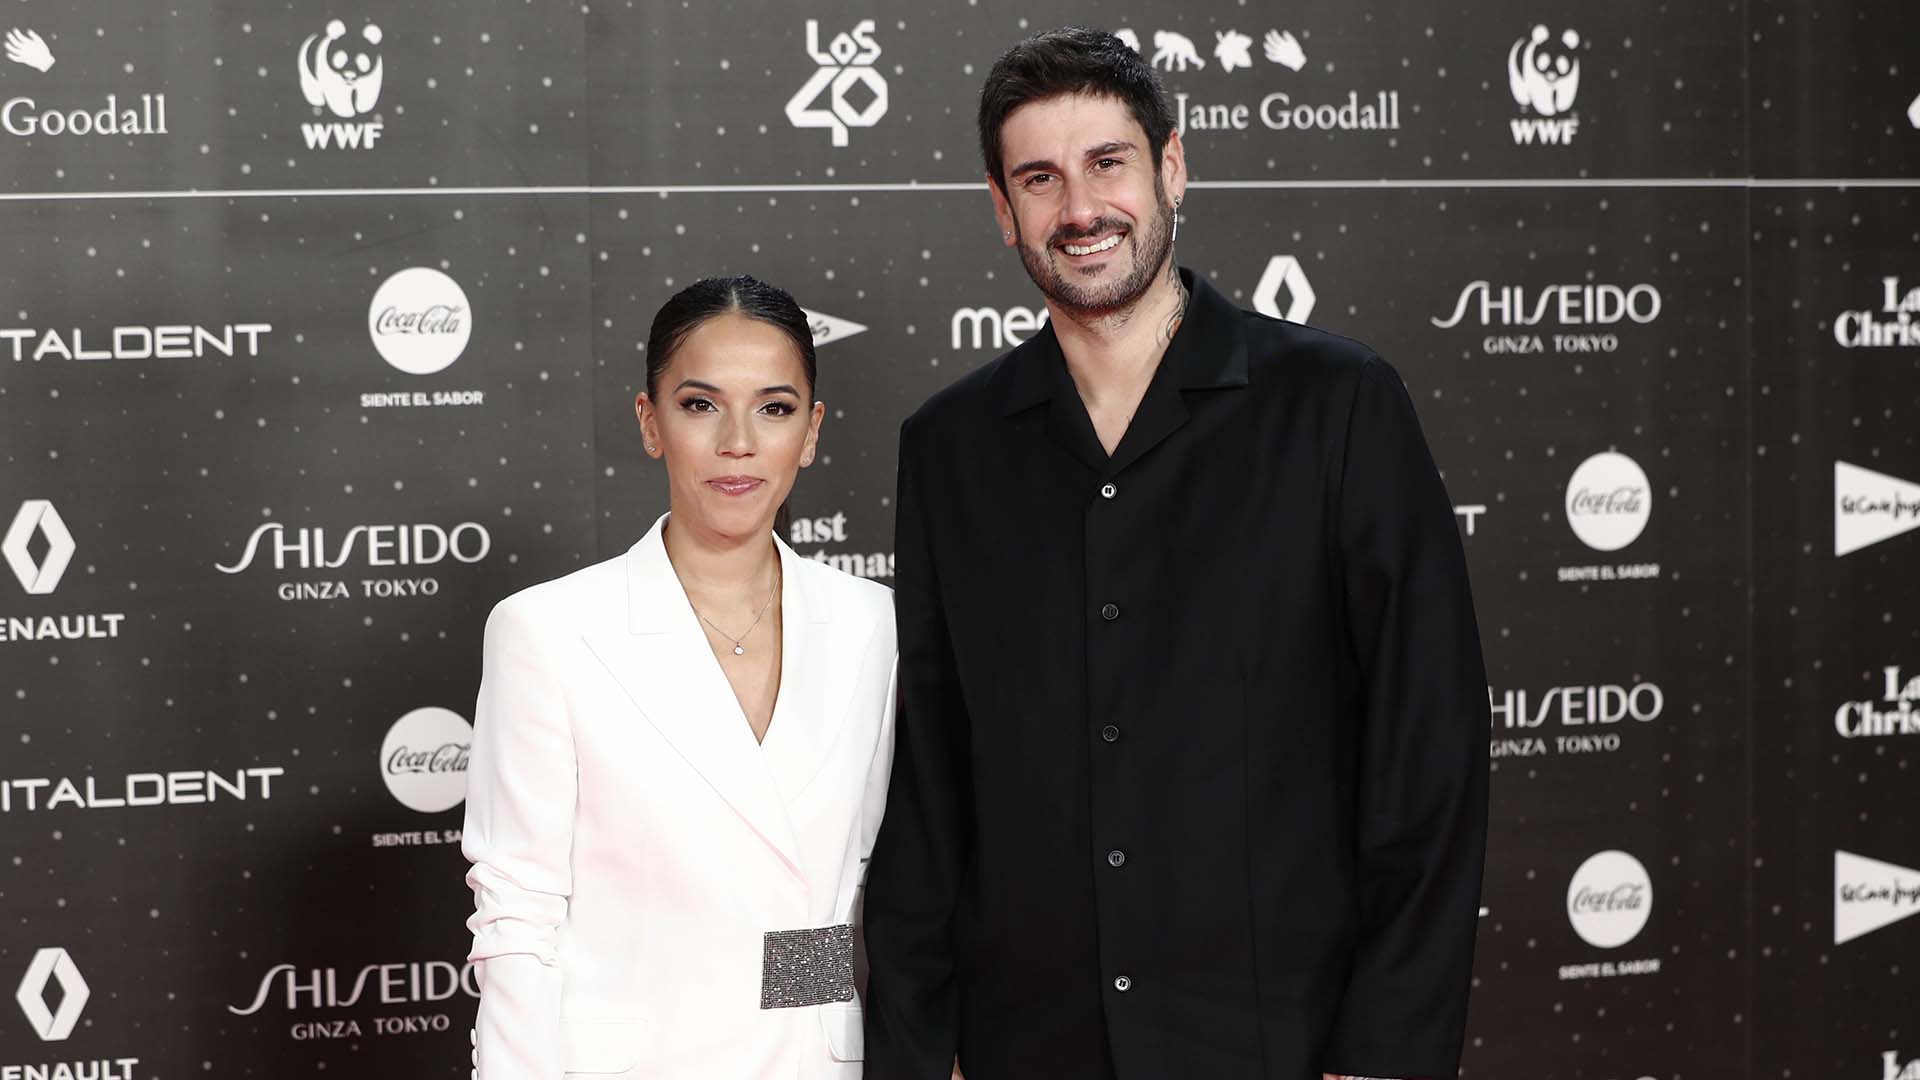 Singer Melendi and Julia Nakamatsu at photocall for 40 Principales awards in Madrid on Friday, 08 November 2019.